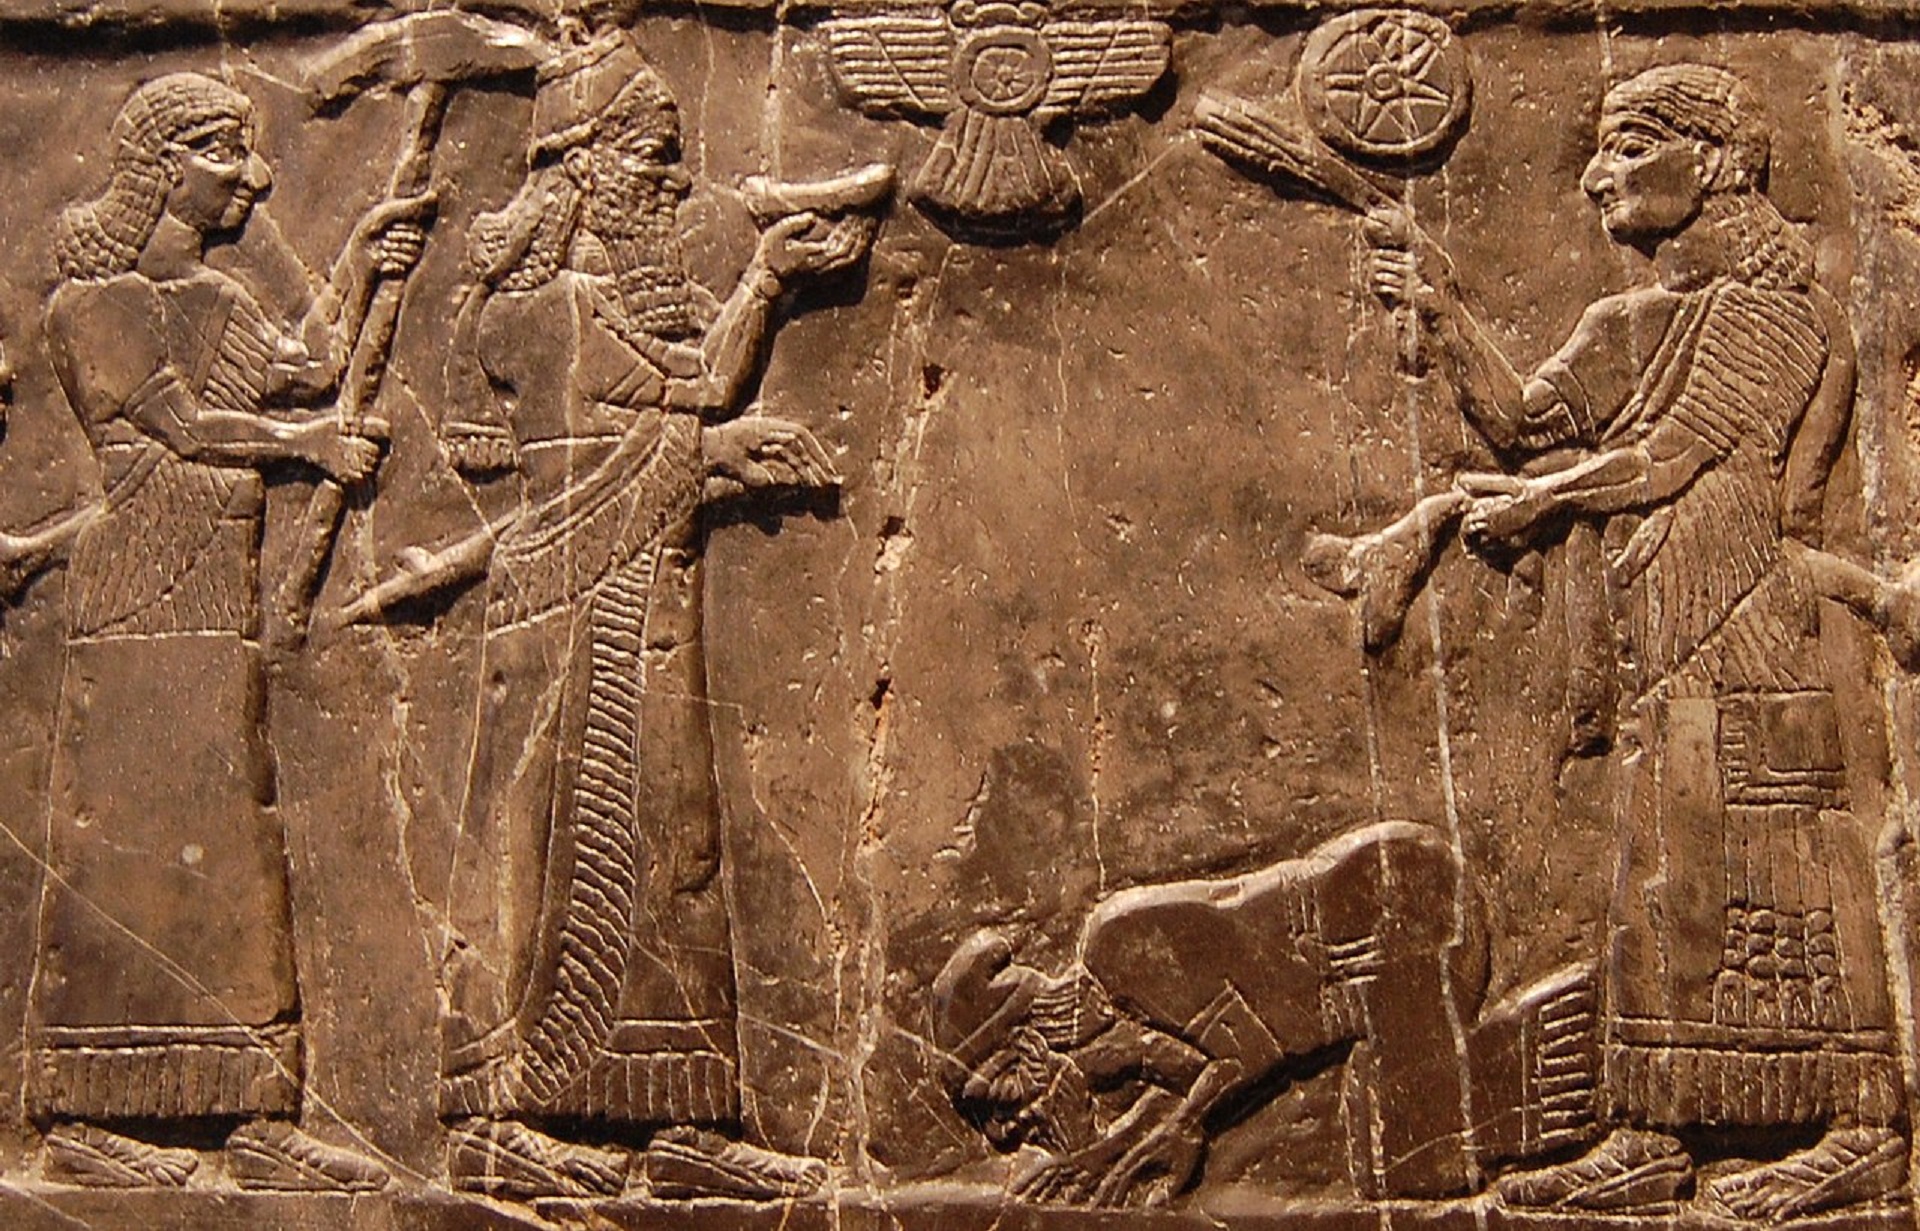 Jehu, le roi d'Israël au début du VIIIe siècle avant J.-C., agenouillé devant le roi d'Assyrie suite à une défaite militaire. © British Museum, Wikimedia Commons, CC BY-SA 3.0